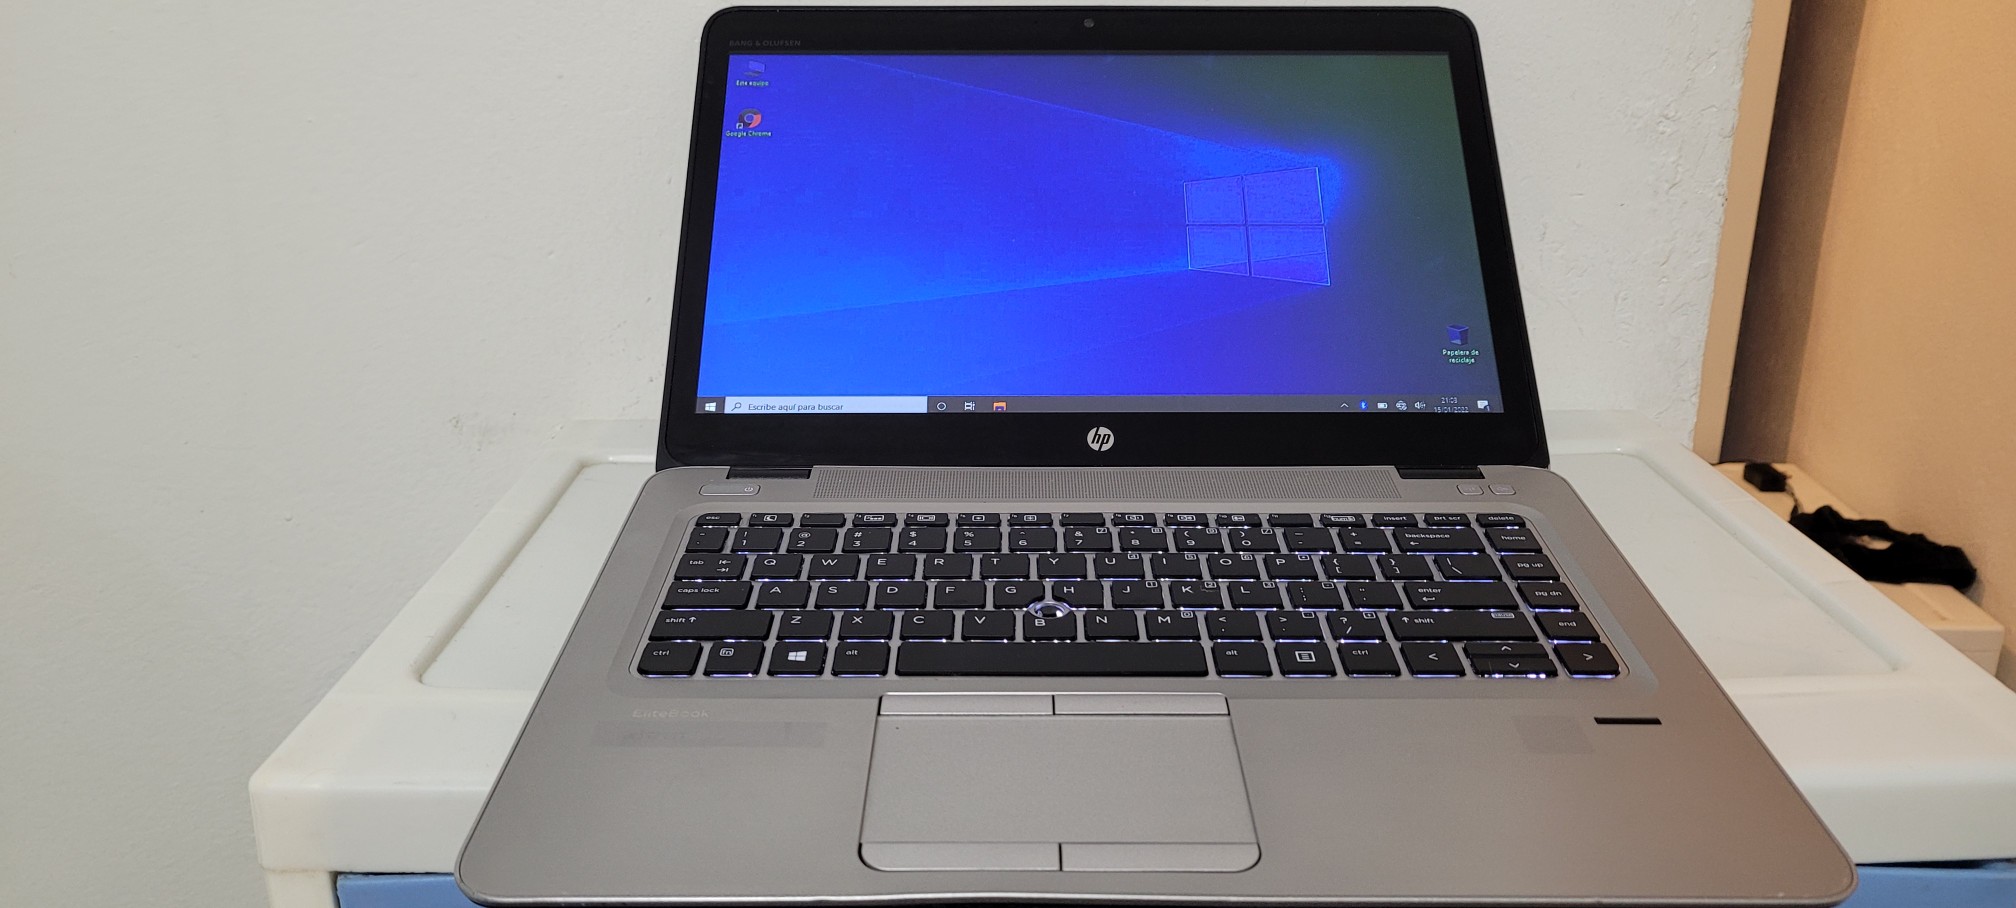 computadoras y laptops - Laptop hp Touch 14 Pulg Core i5 7ma Gen Ram 8gb ddr4 Disco 128gb Y 320gb full